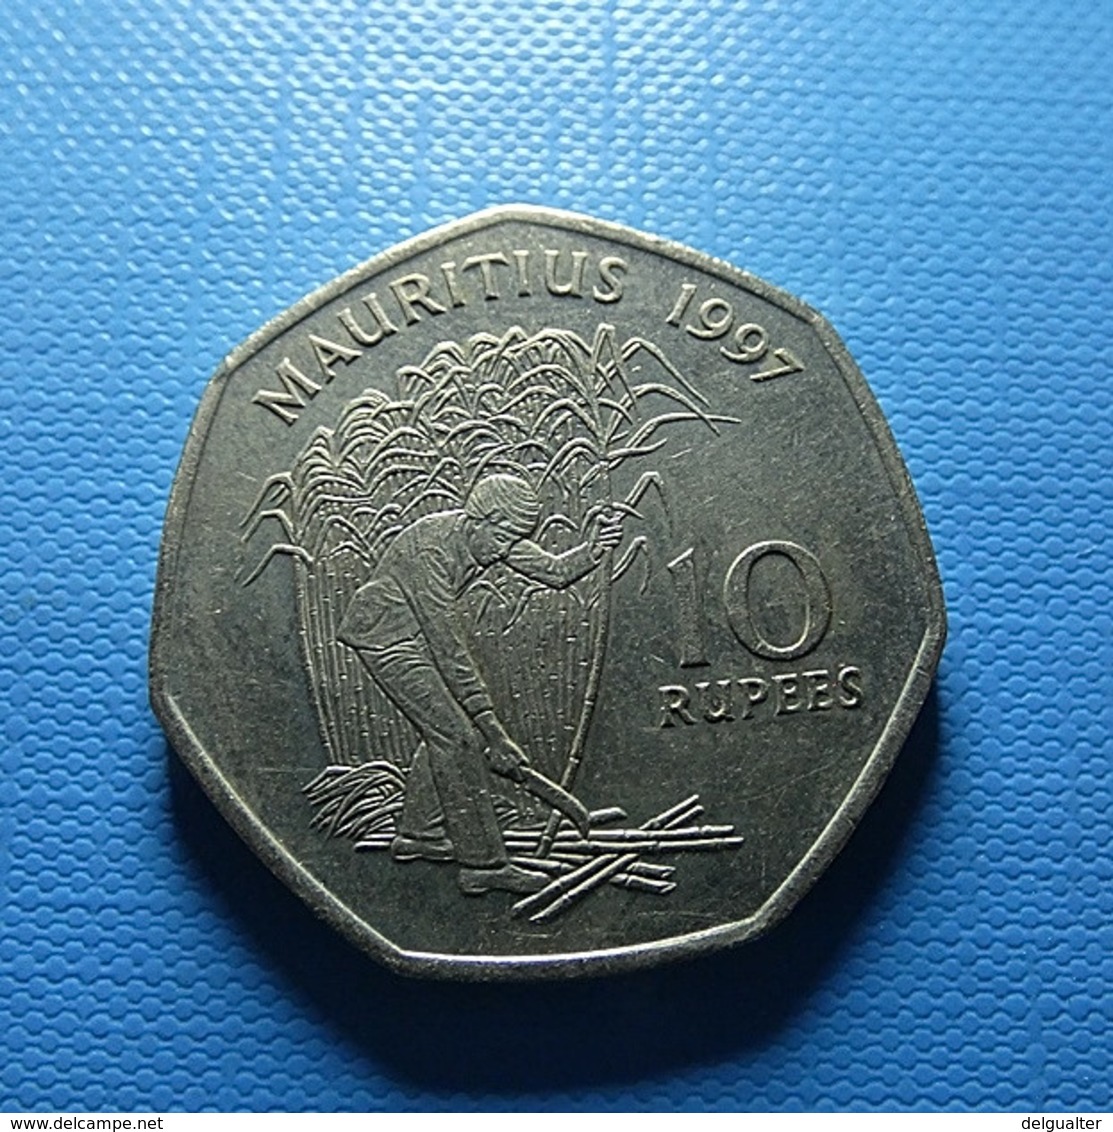 Mauritius 10 Rupees 1997 - Mauritius